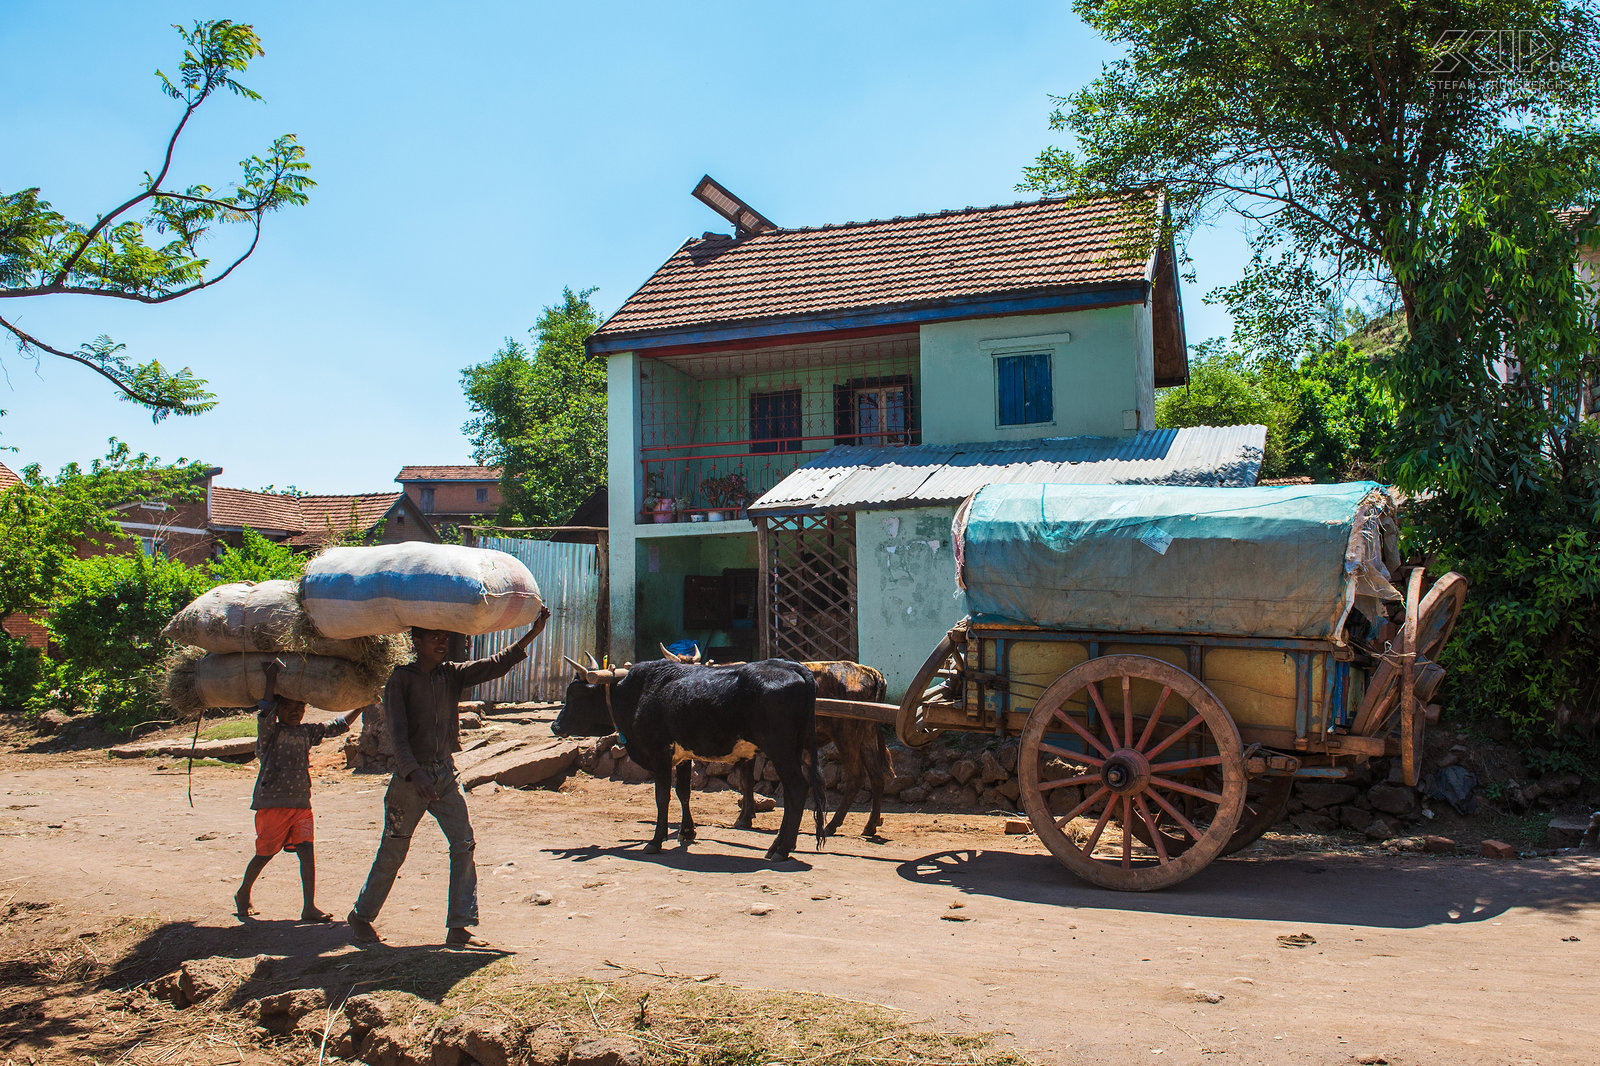 Befato - Zebukar Traditionele zebukar in de buurt van Befato een klein dorpje in de regio rond de stad Antsirabe. De zeboe is het vee dat overal voorkomt in Madagaskar. Ze zijn zeer goed aangepast aan hoge temperaturen en zeboe ossen zijn zeer sterk en worden gebruikt voor het ploegen en het trekken karren Stefan Cruysberghs